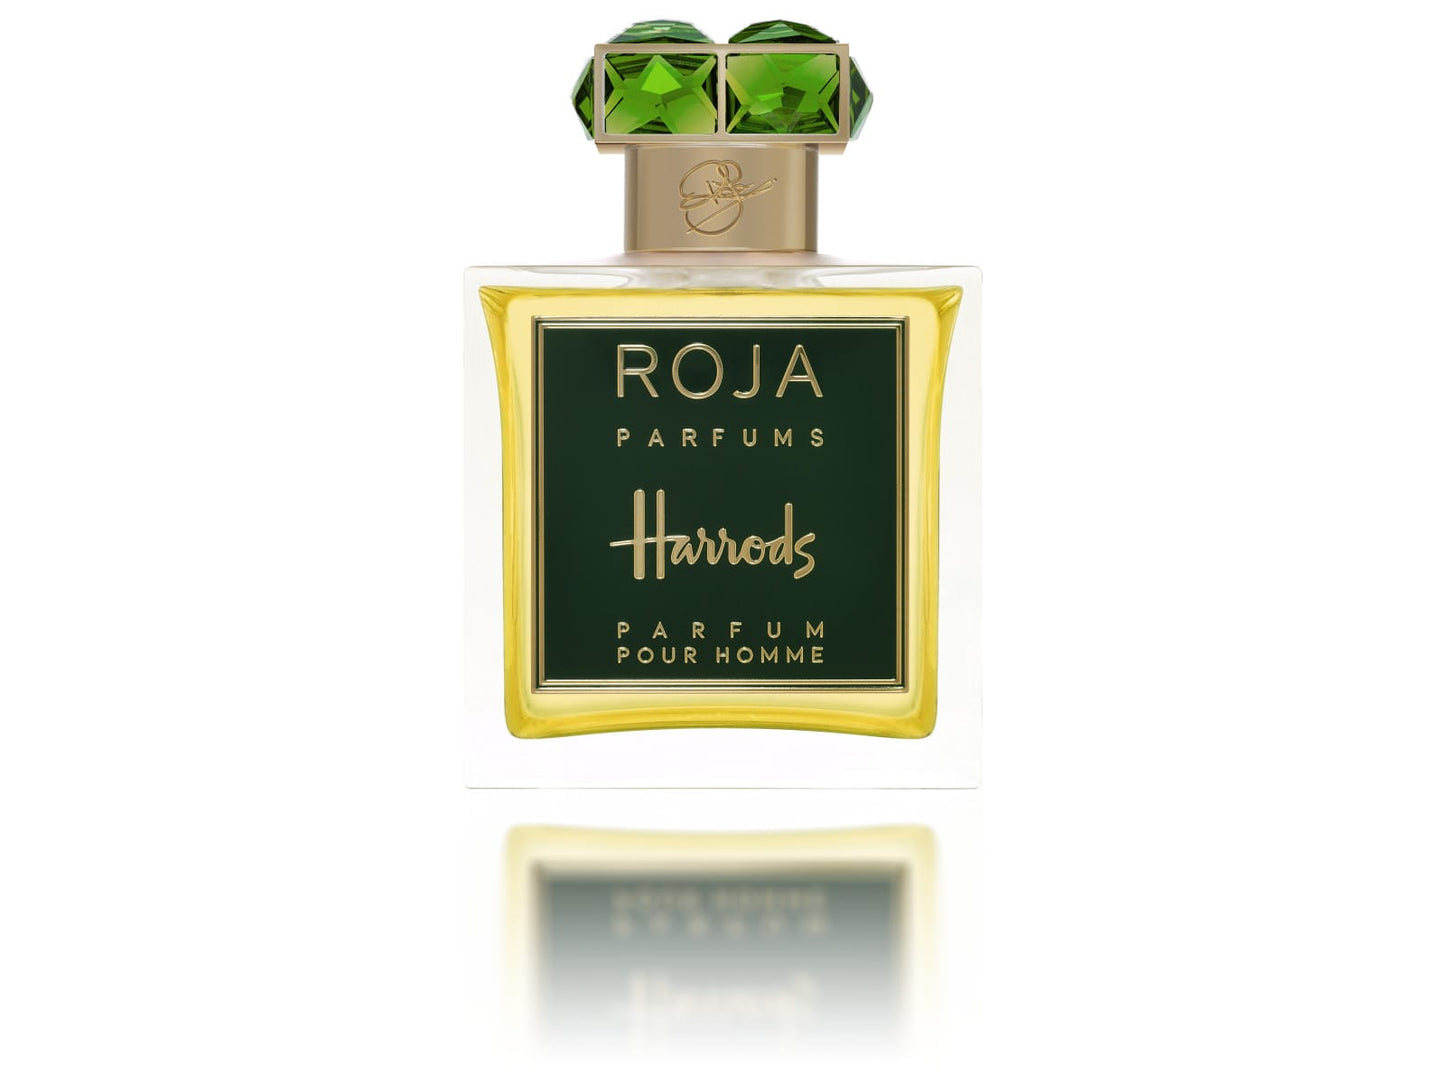 Roja - Harrods Exclusive Pour Homme.